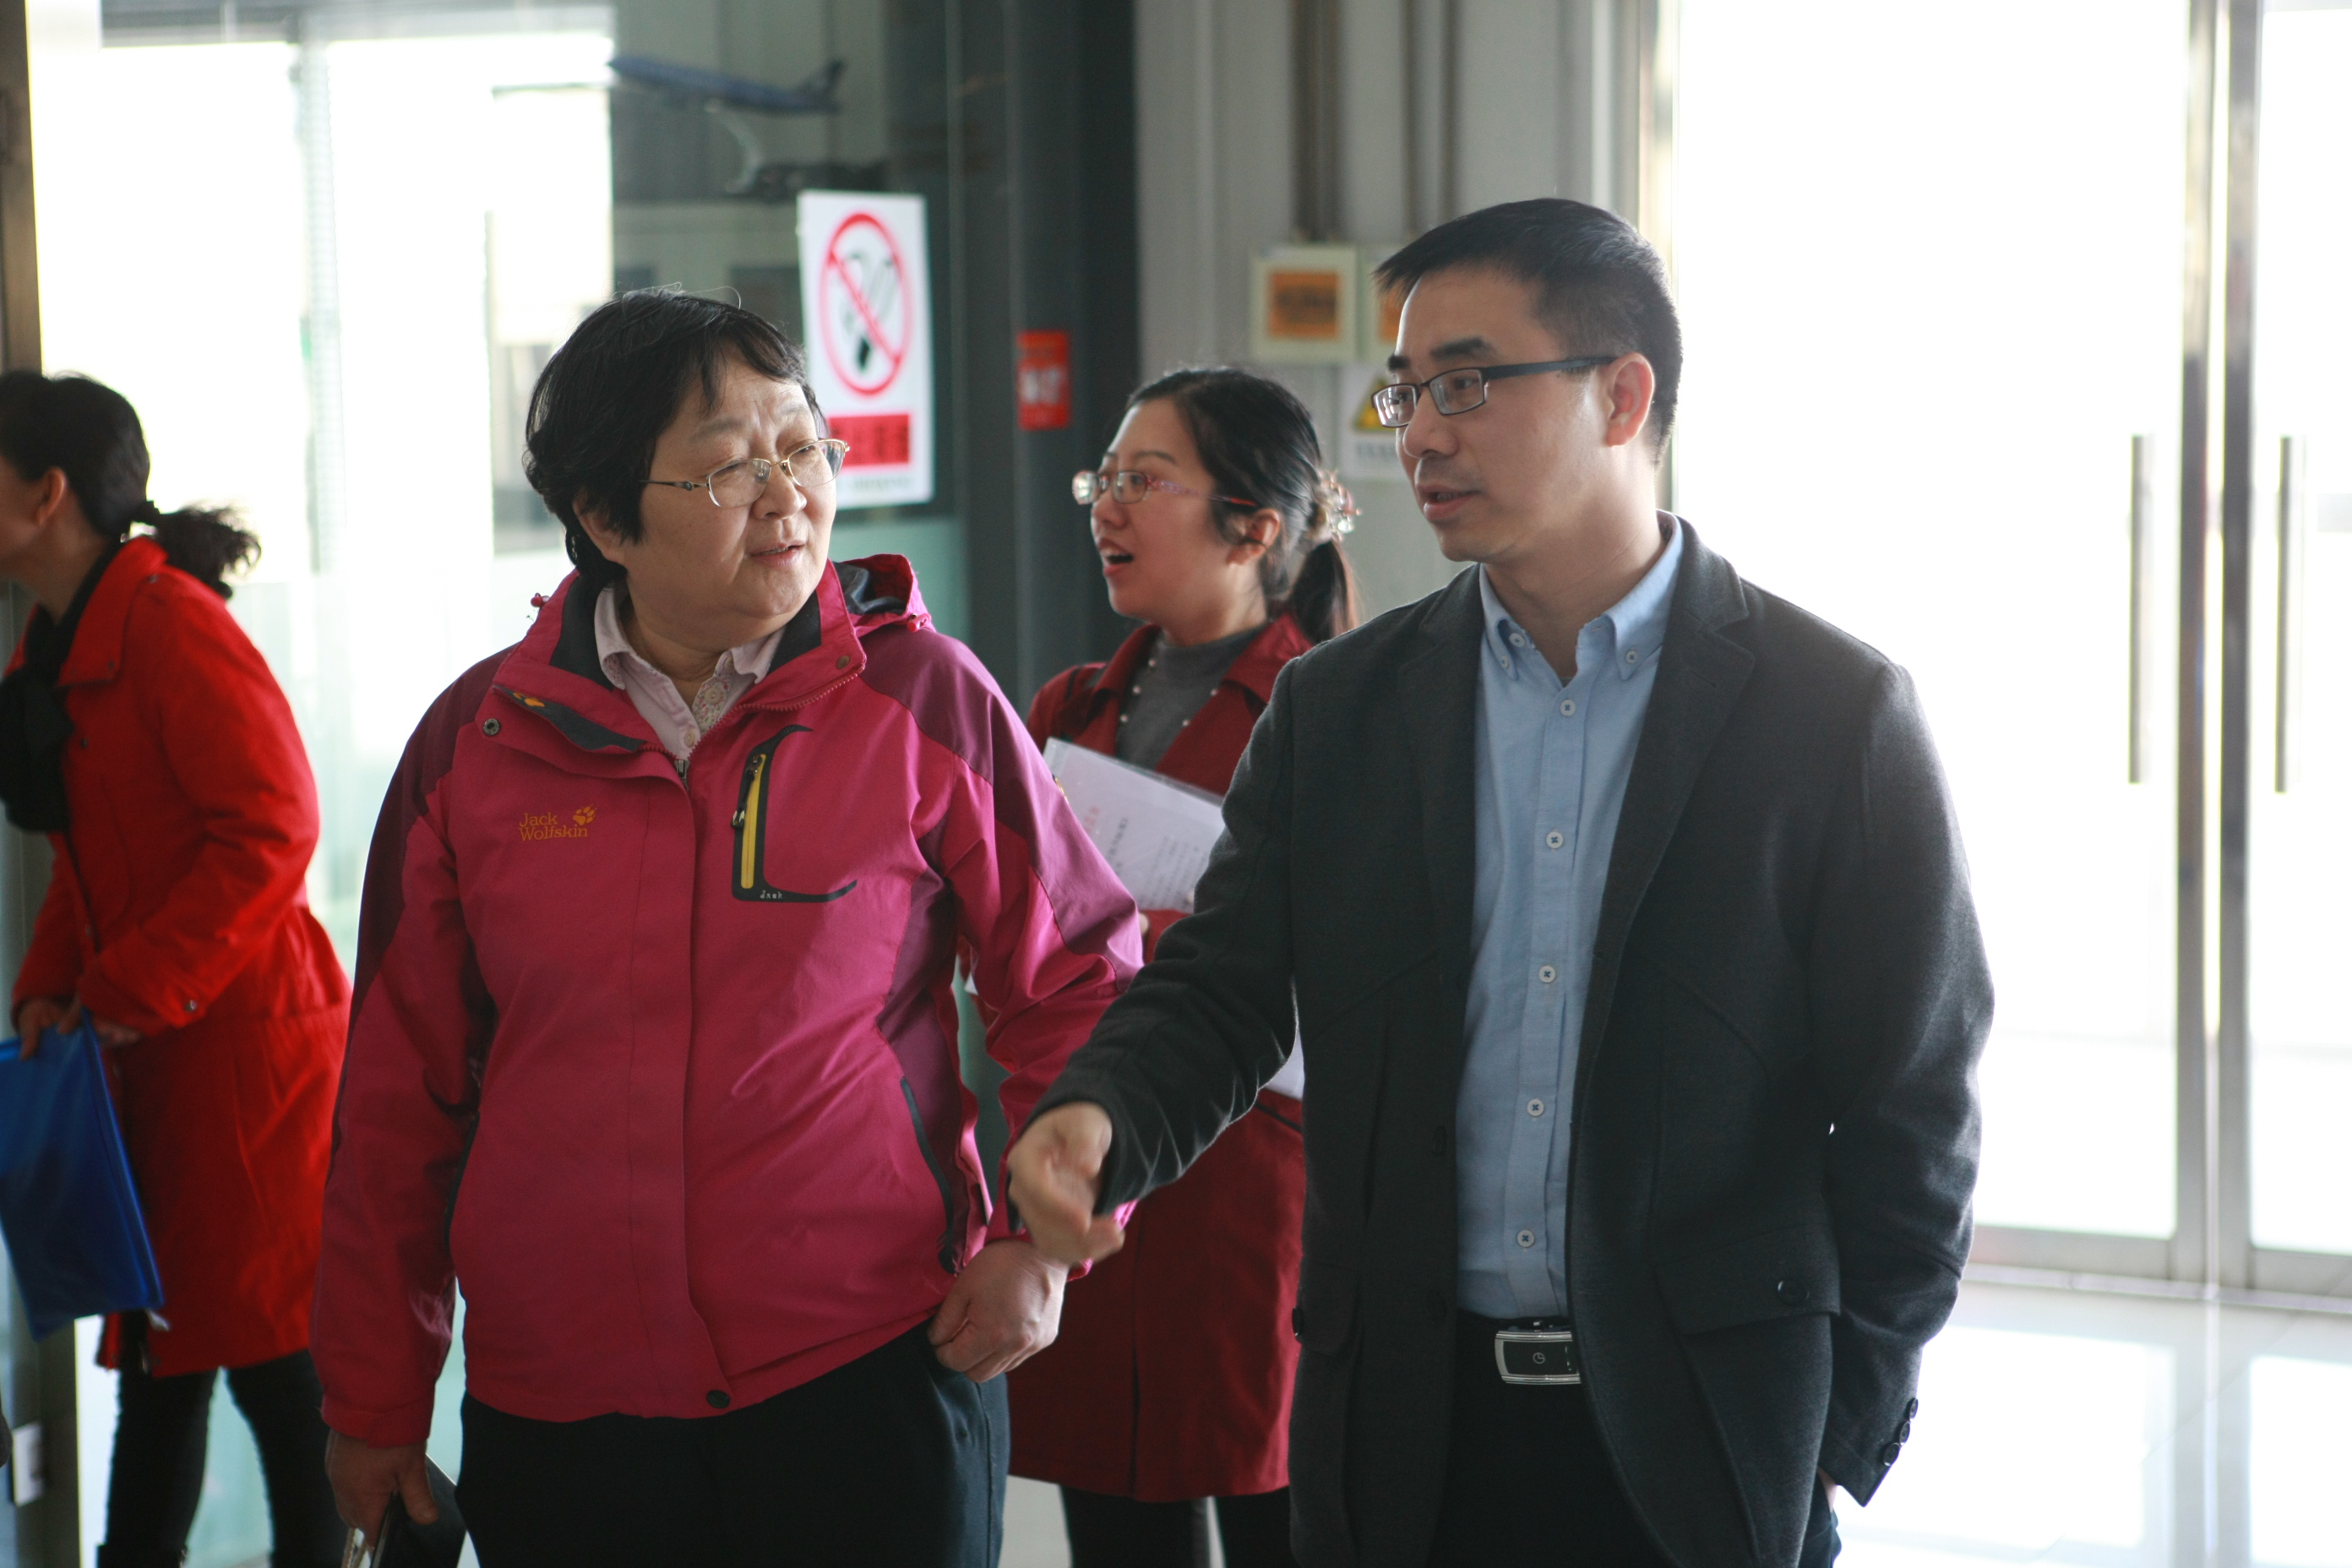 全国物流教育教学指导委员会副秘书长李俊峰及与会专家参观我院物流实训中心